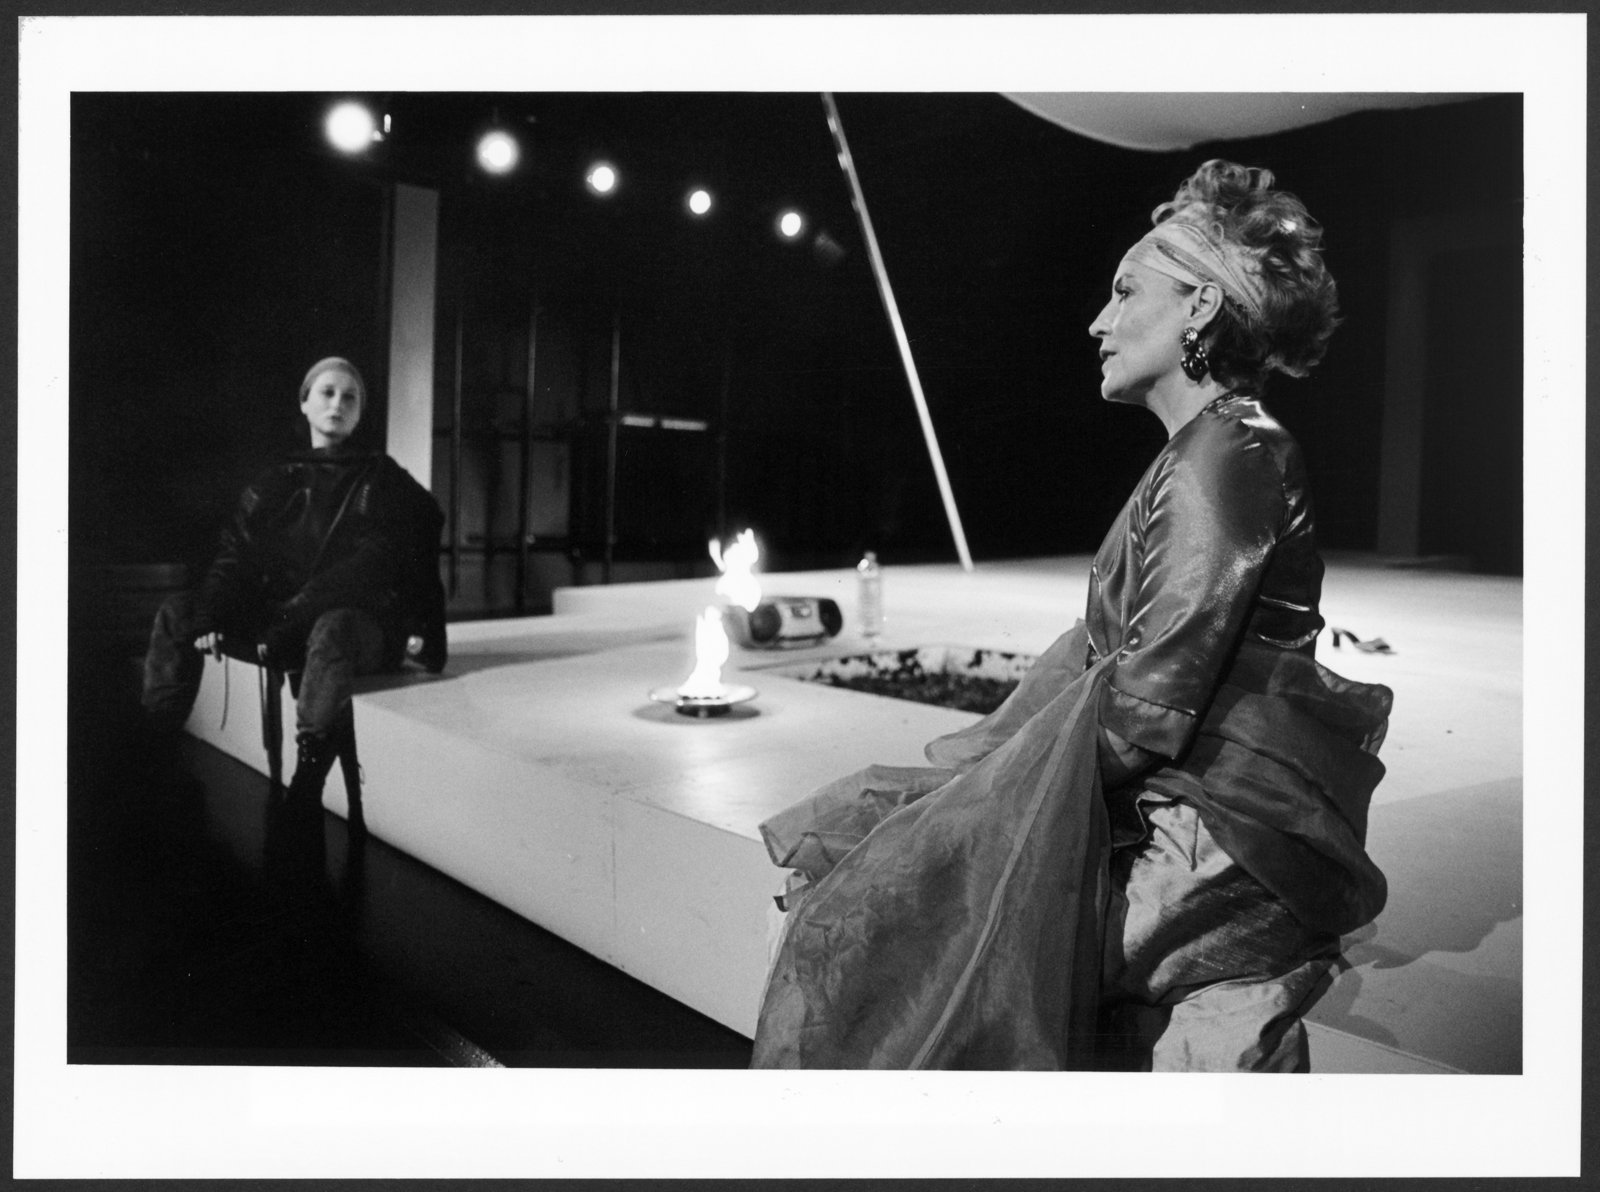 Bild der Studioinszenierung "Elektra" an der Hochschule für Schauspielkunst Ernst Busch (Hochschule für Schauspielkunst Ernst Busch Berlin RR-F)